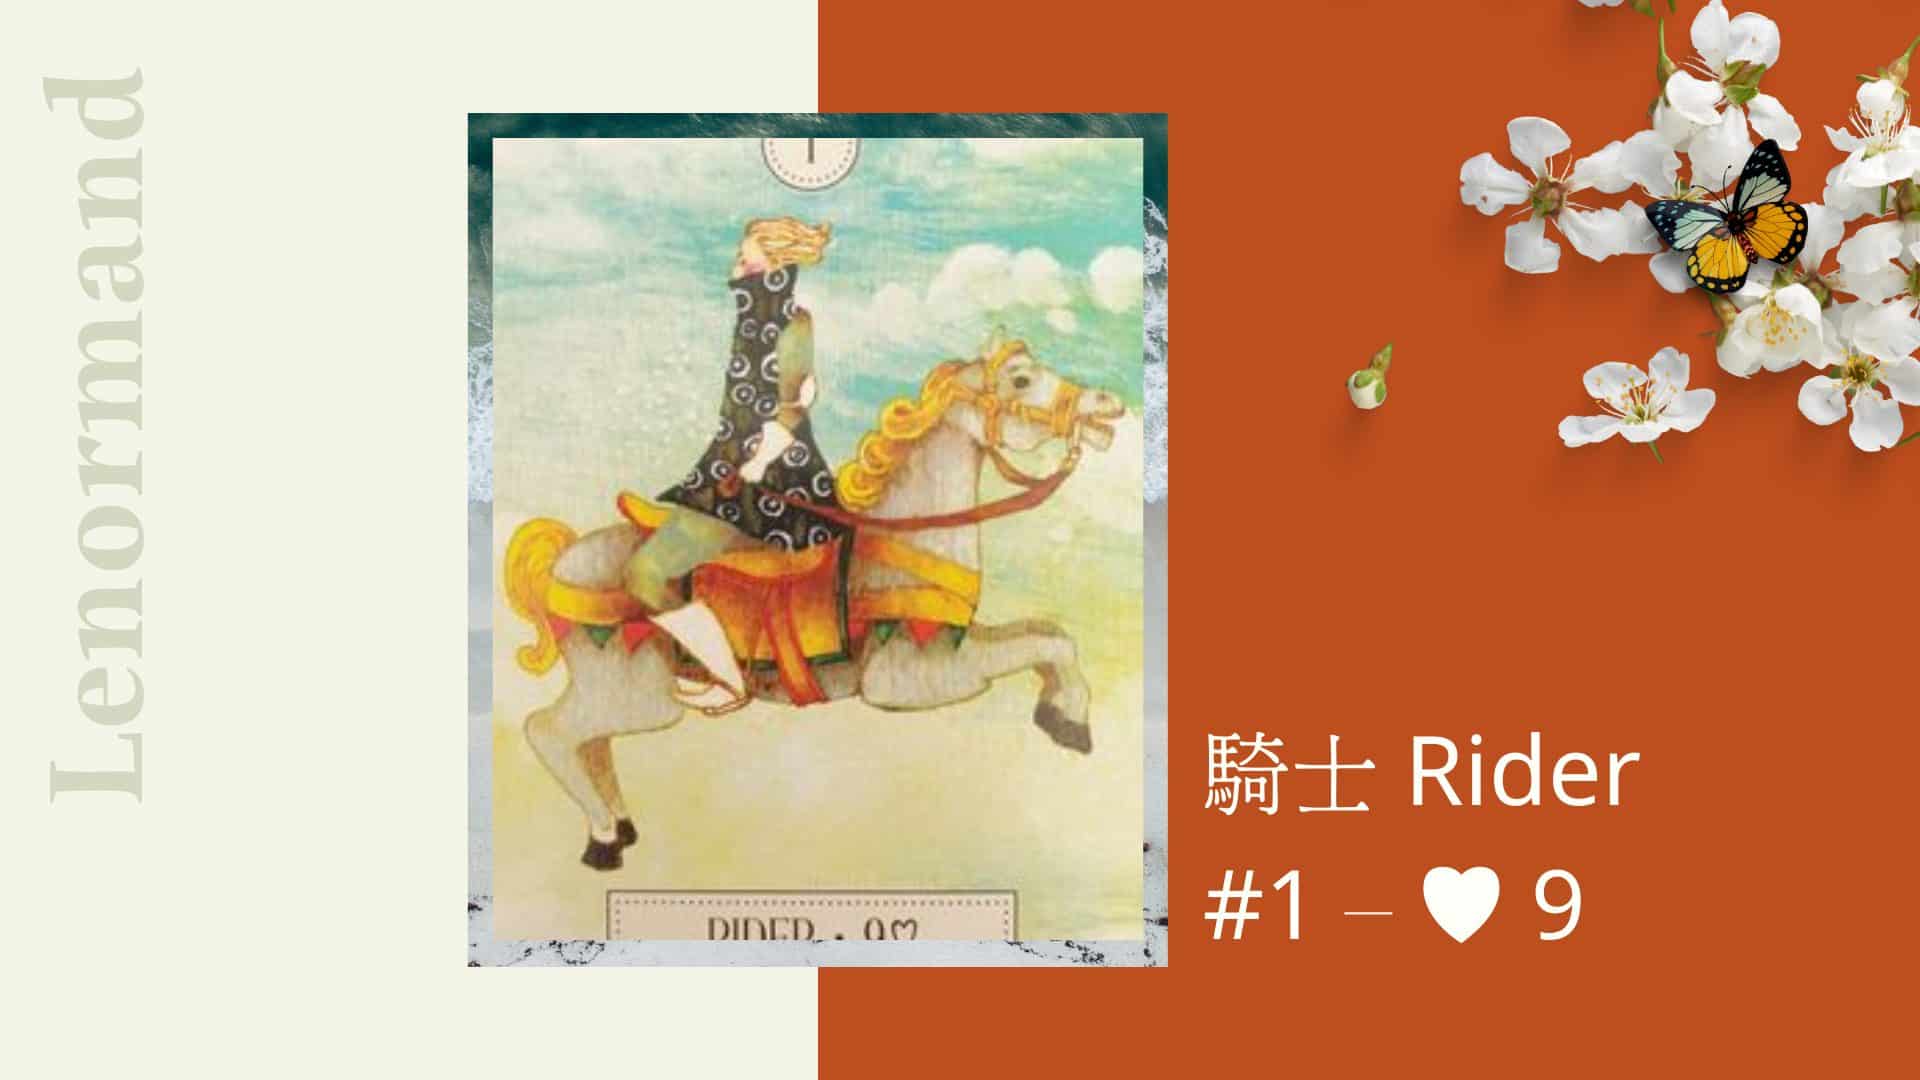 1.騎士 Rider-夢想之路雷諾曼卡